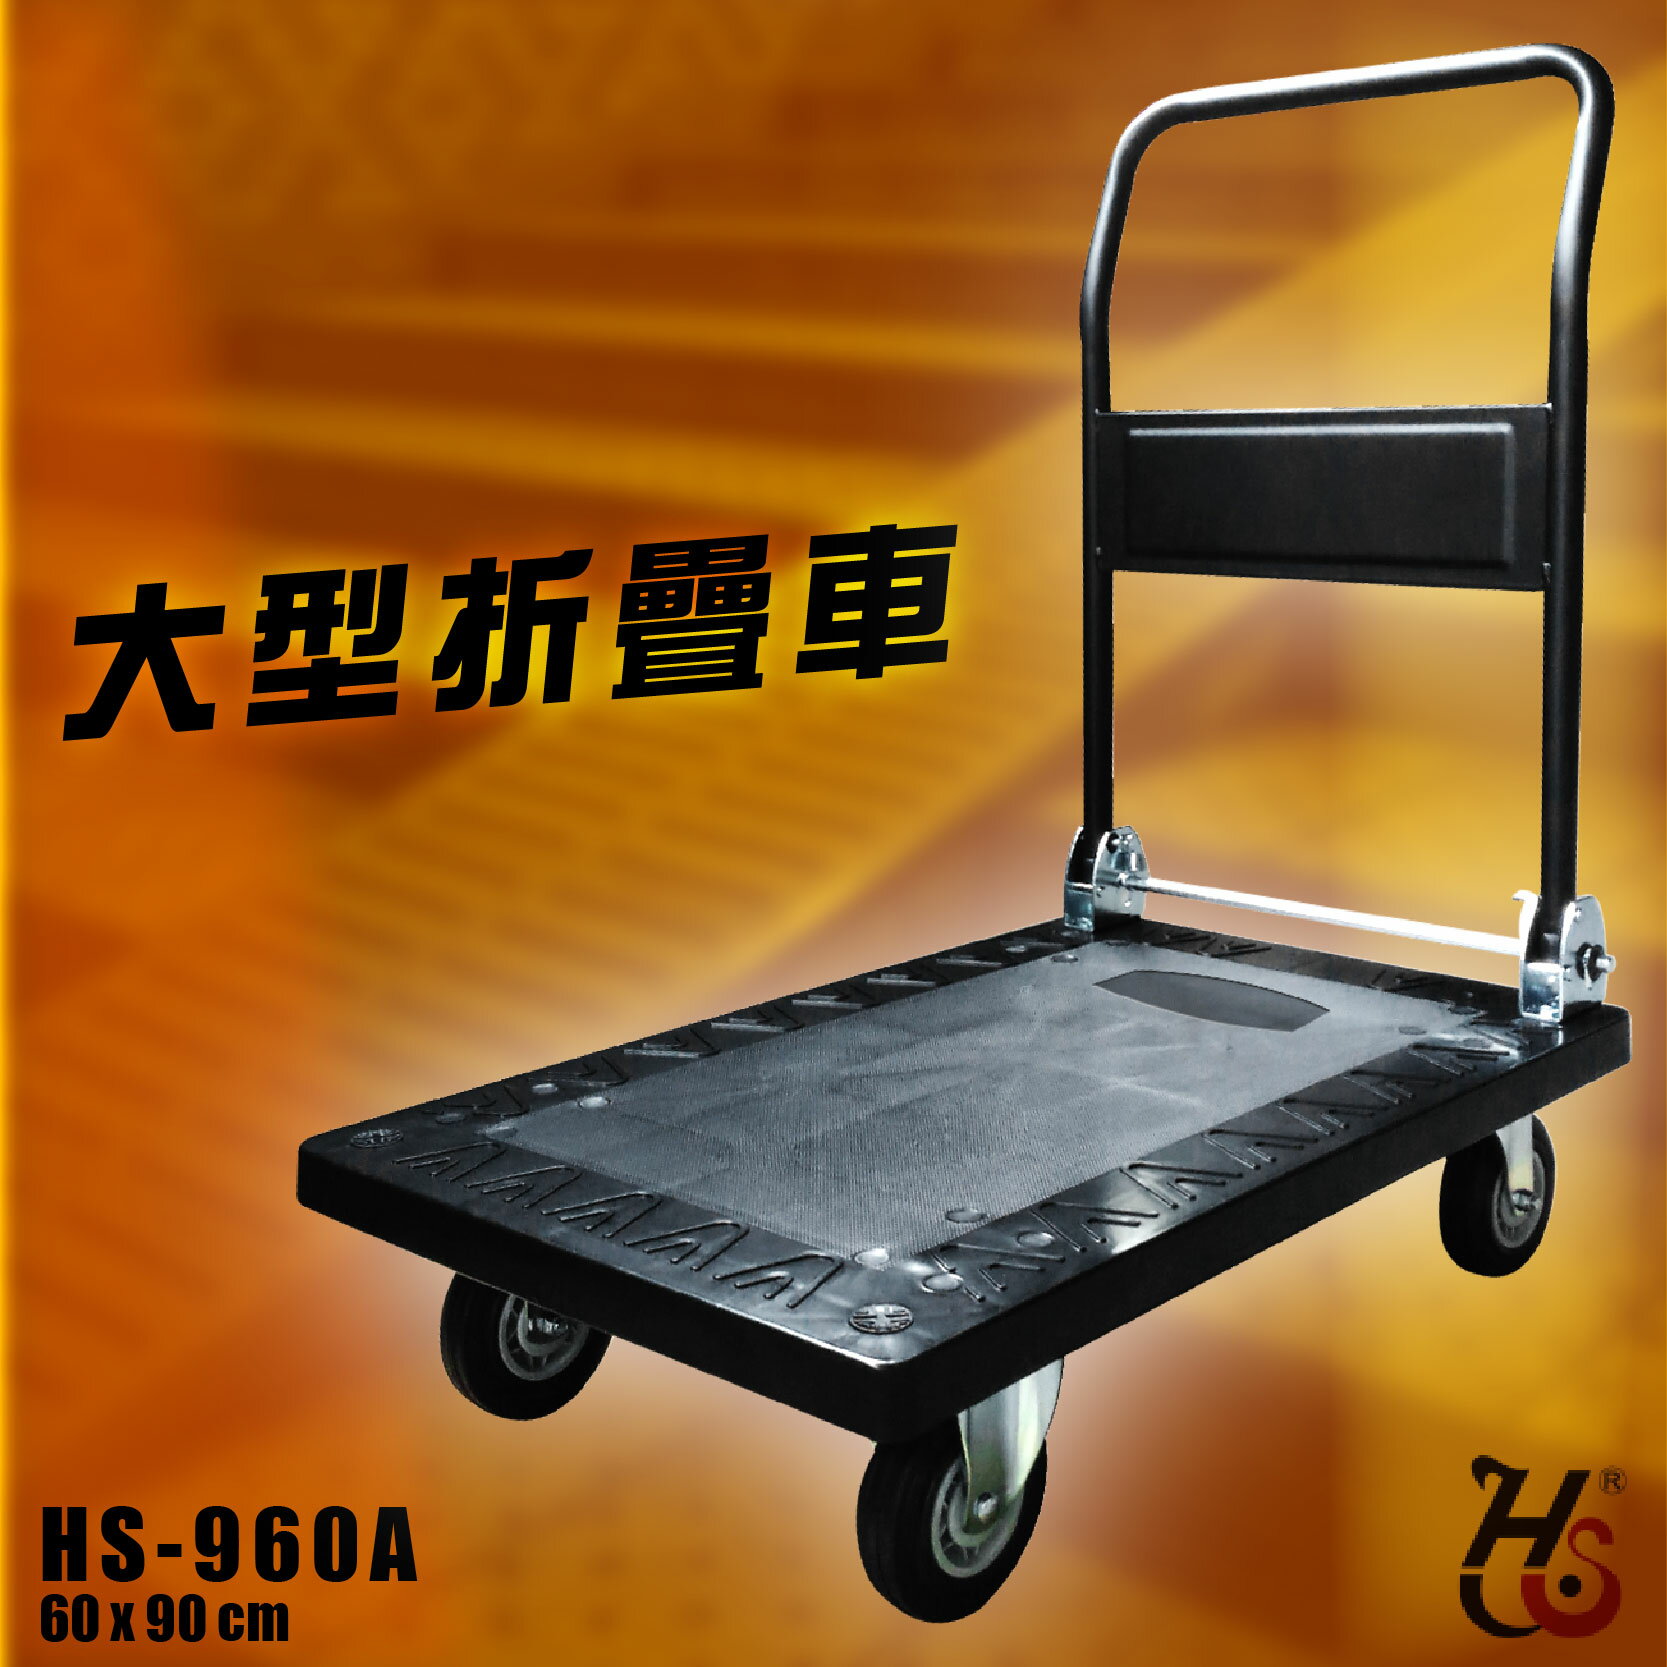 【載重500kg】大型折疊推車 HS-960A 90度折疊手柄 台灣製造 塑鋼材質 手推車 工具車 搬貨